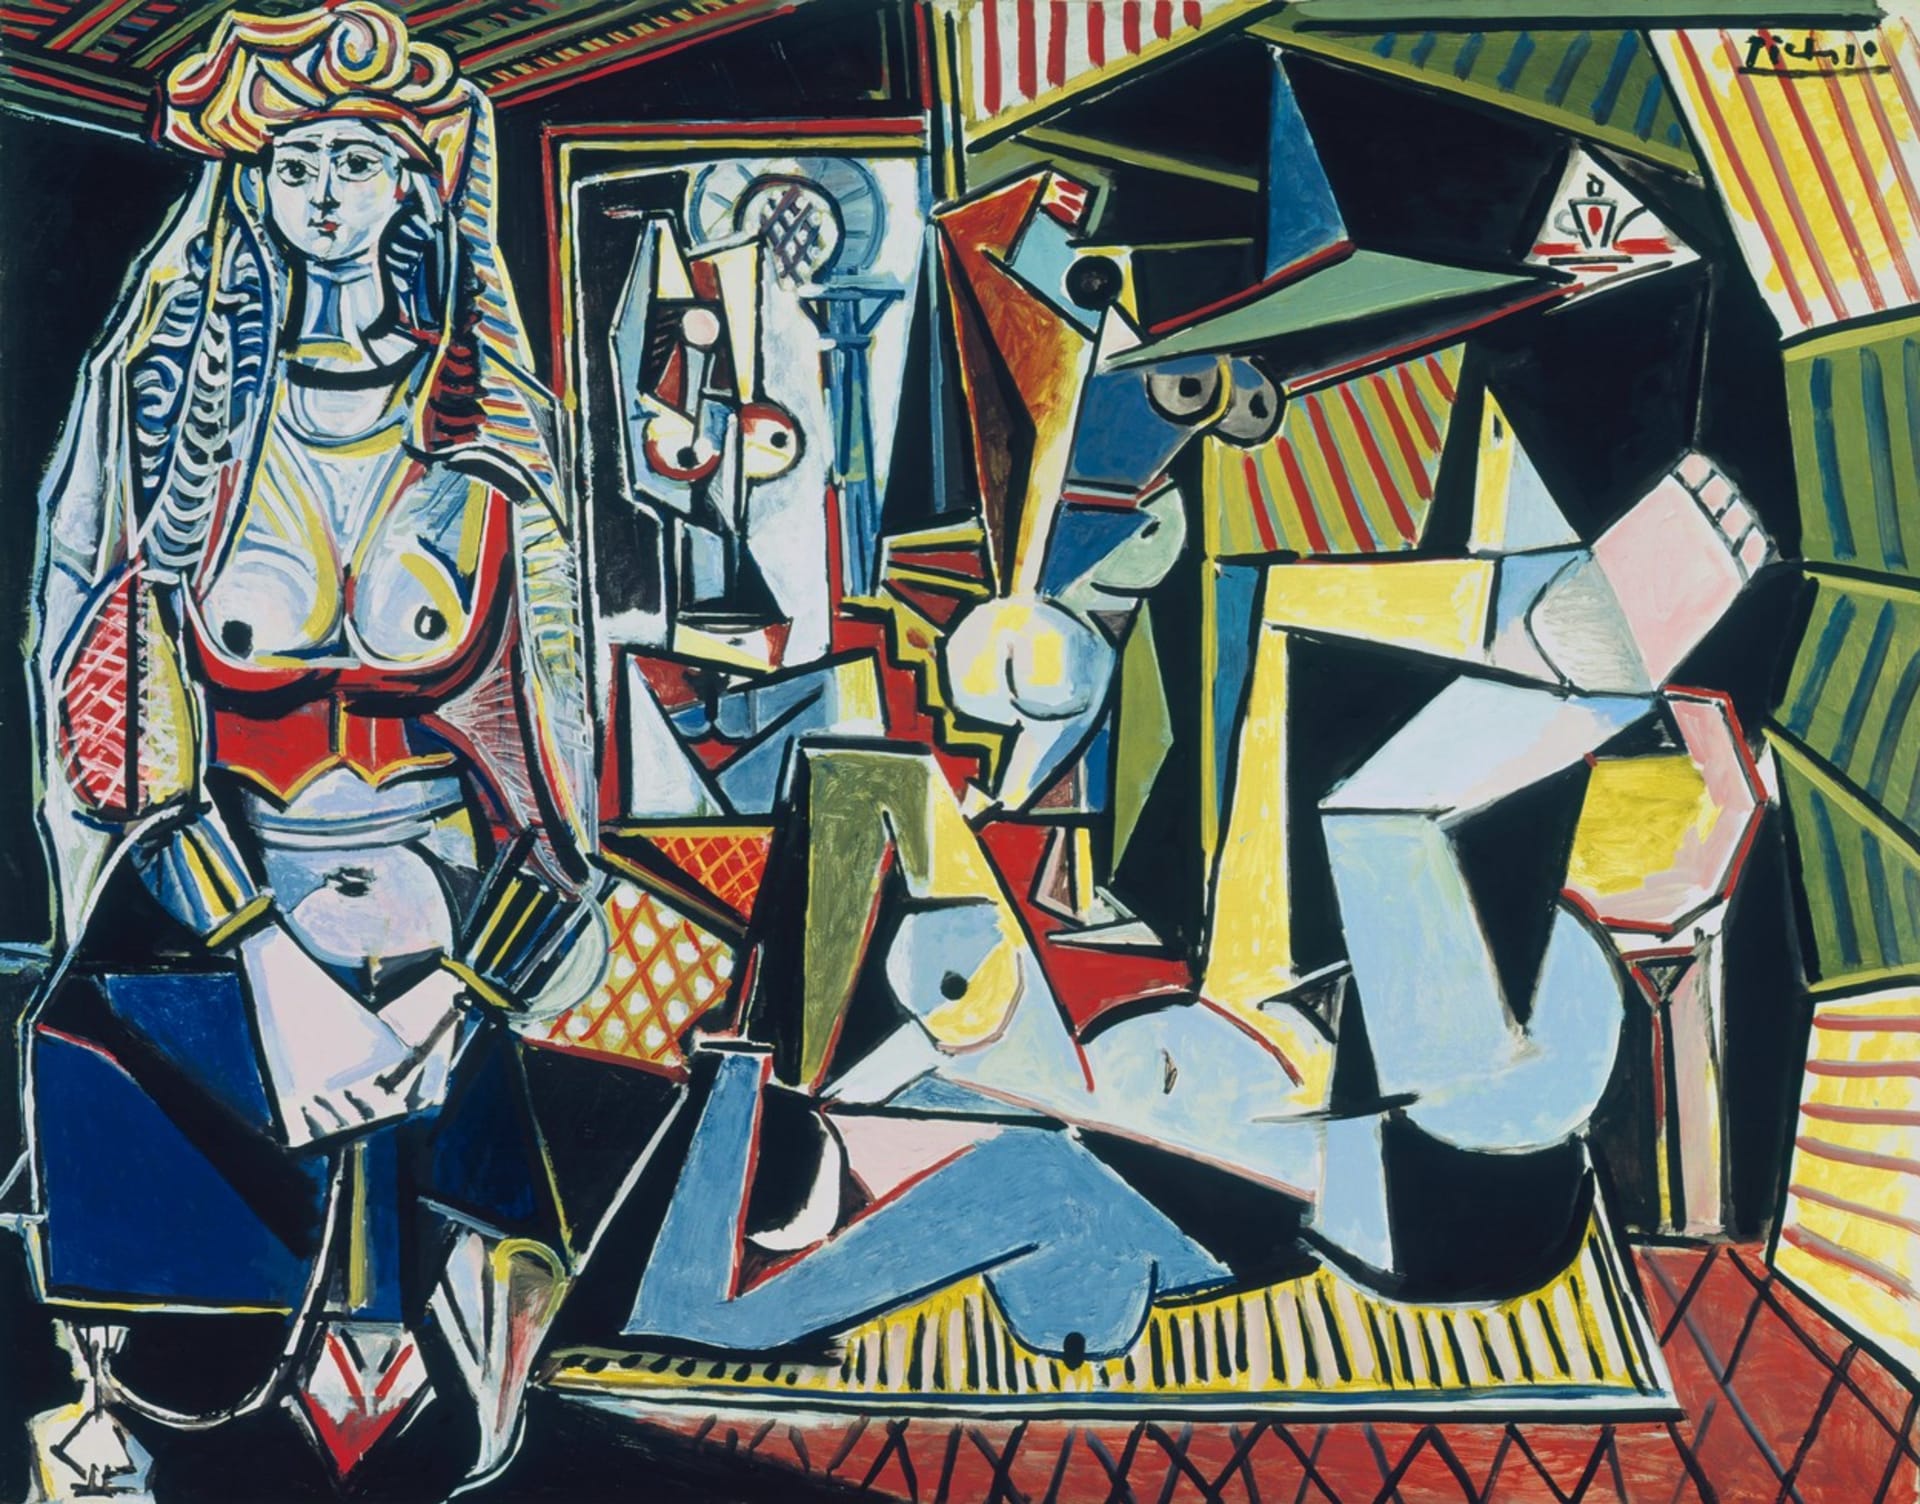 Blíženci: Kubismus v podání Pabla Picassa a obrazu Les femmes dAlger neboli Alžírská žena